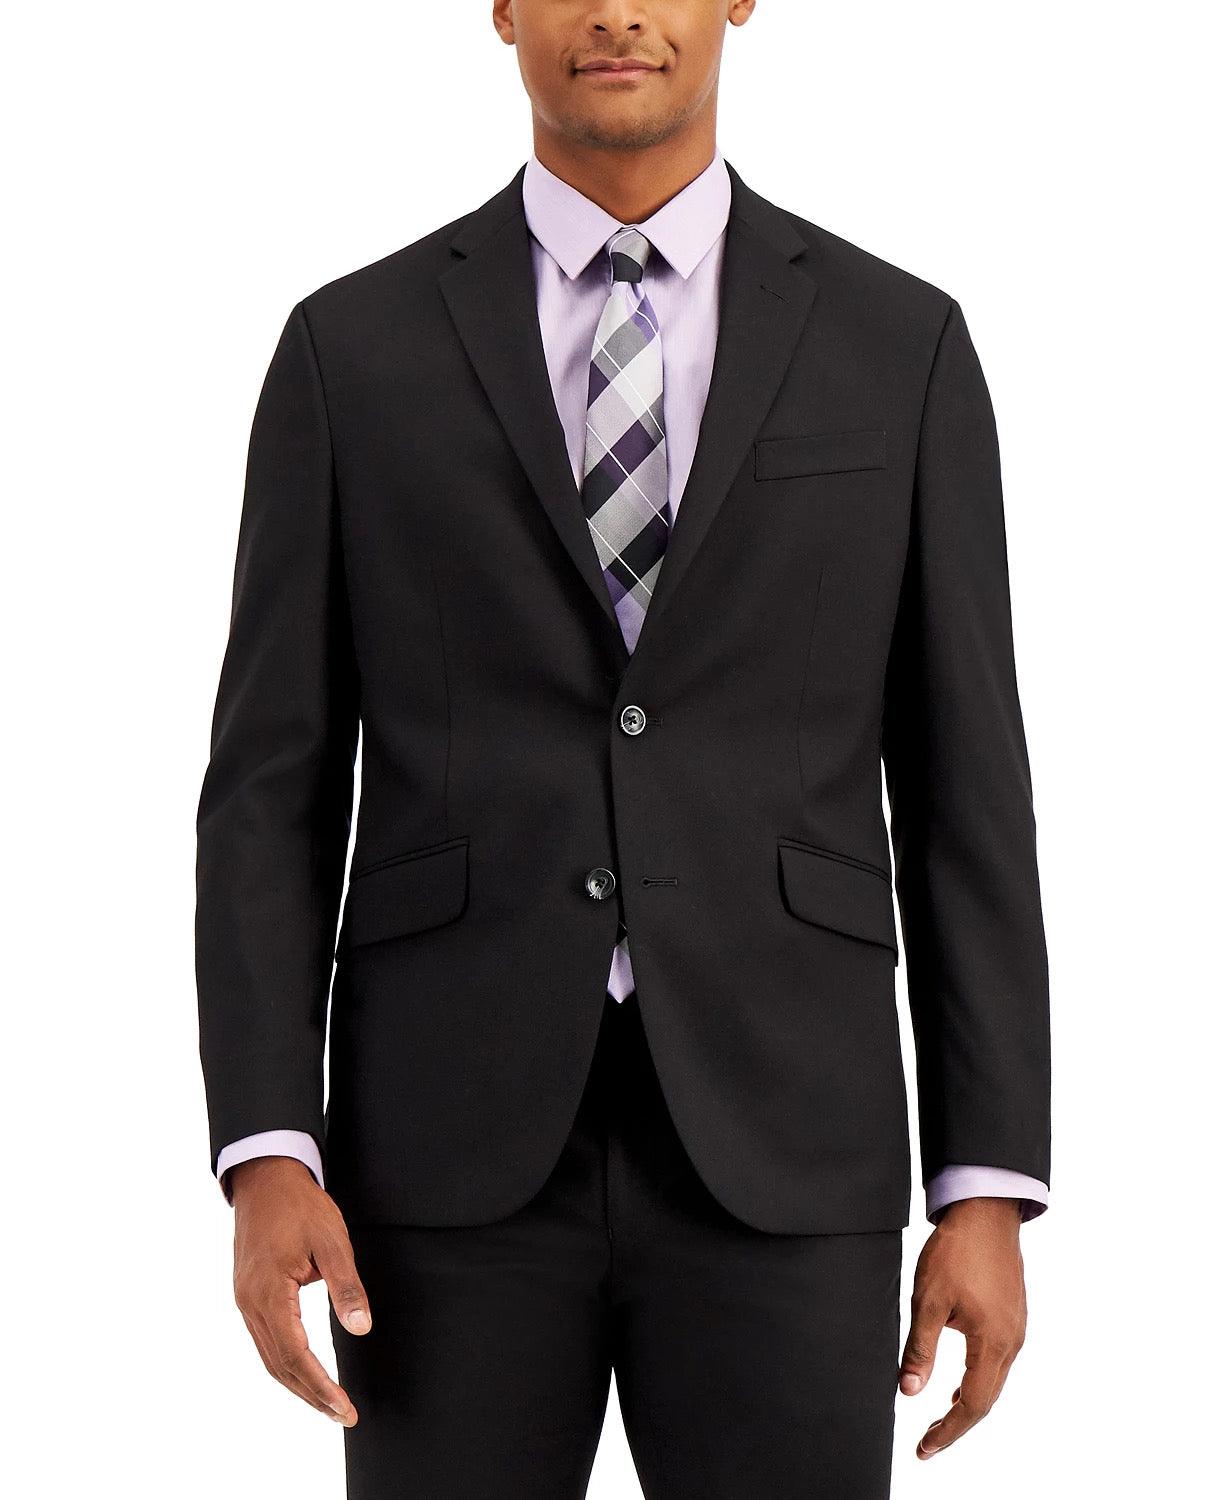 Kenneth Cole Reaction Men's Slim Fit Suit 38R / 31 x 32 Black Techni-Cole - Bristol Apparel Co